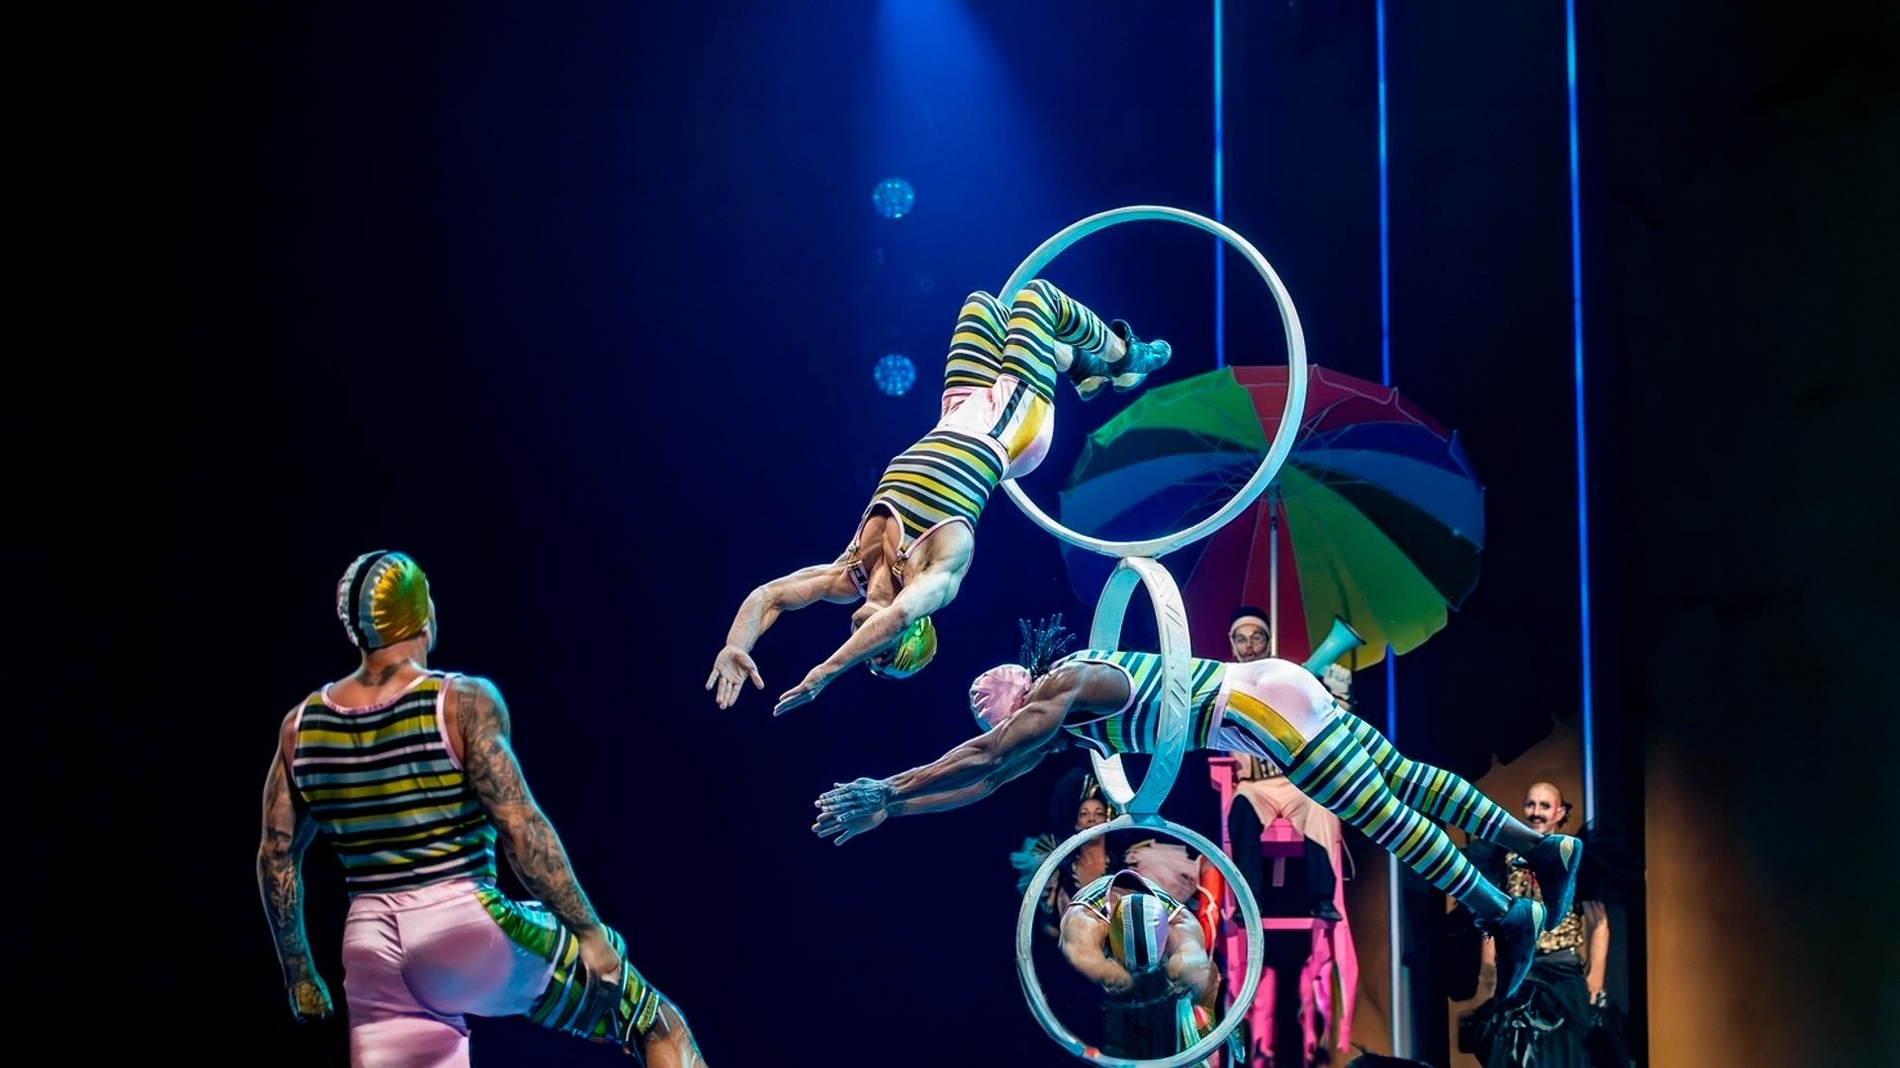 un grup d' artistes acrobatics actuant en un escenari